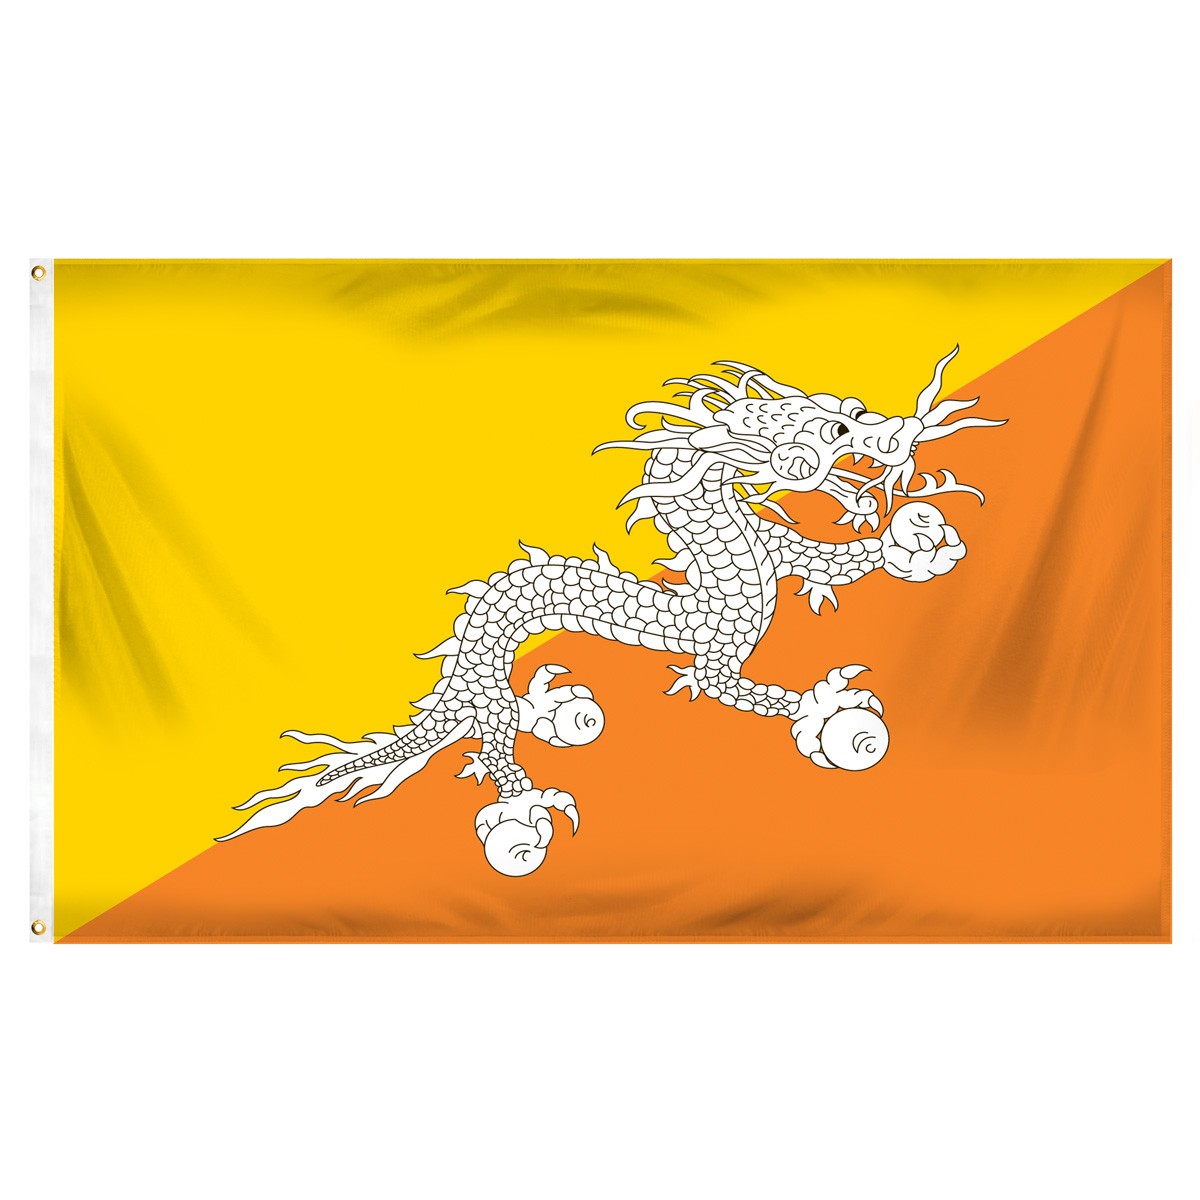 Bhutan Banner Roll Up